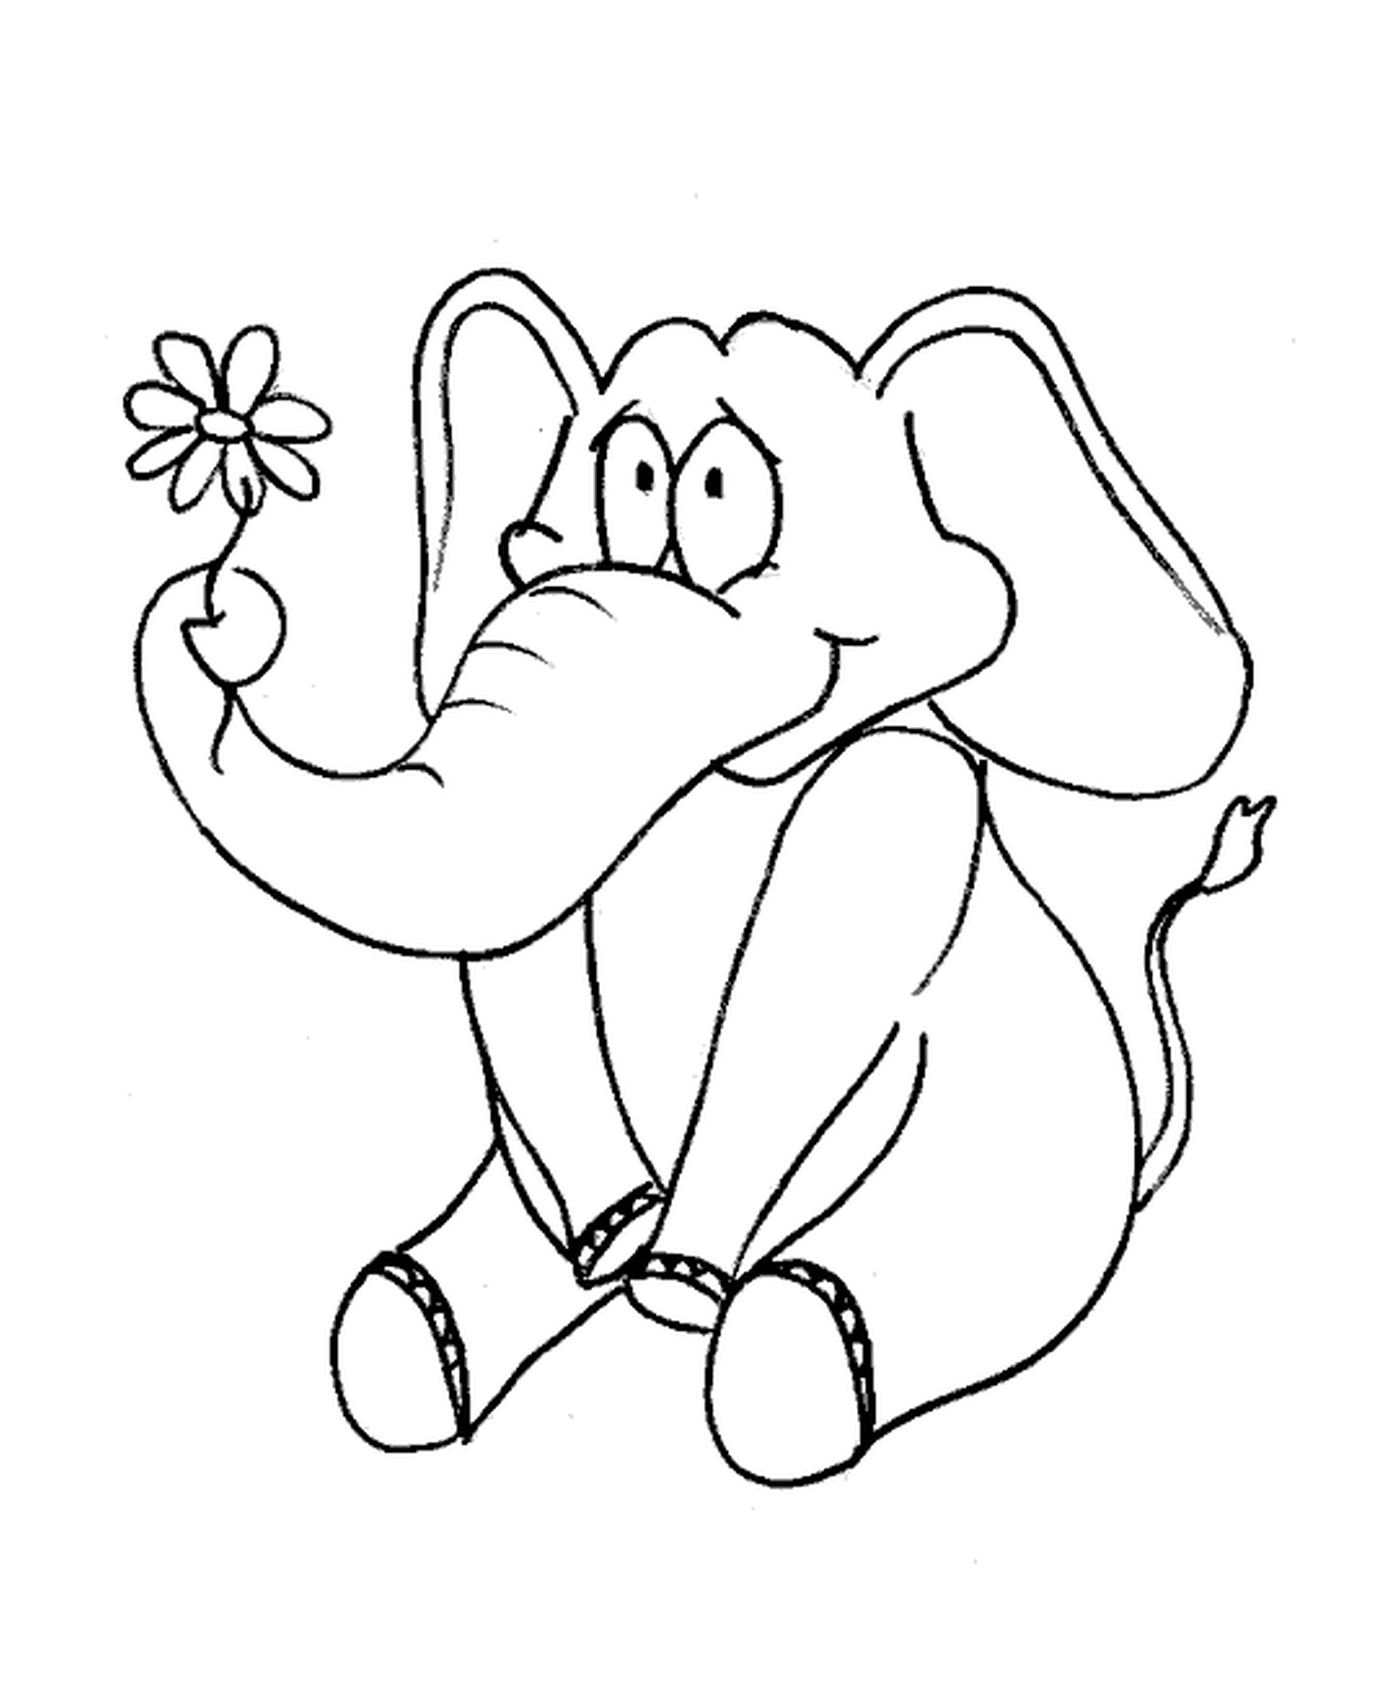  Um elefante segurando uma flor 